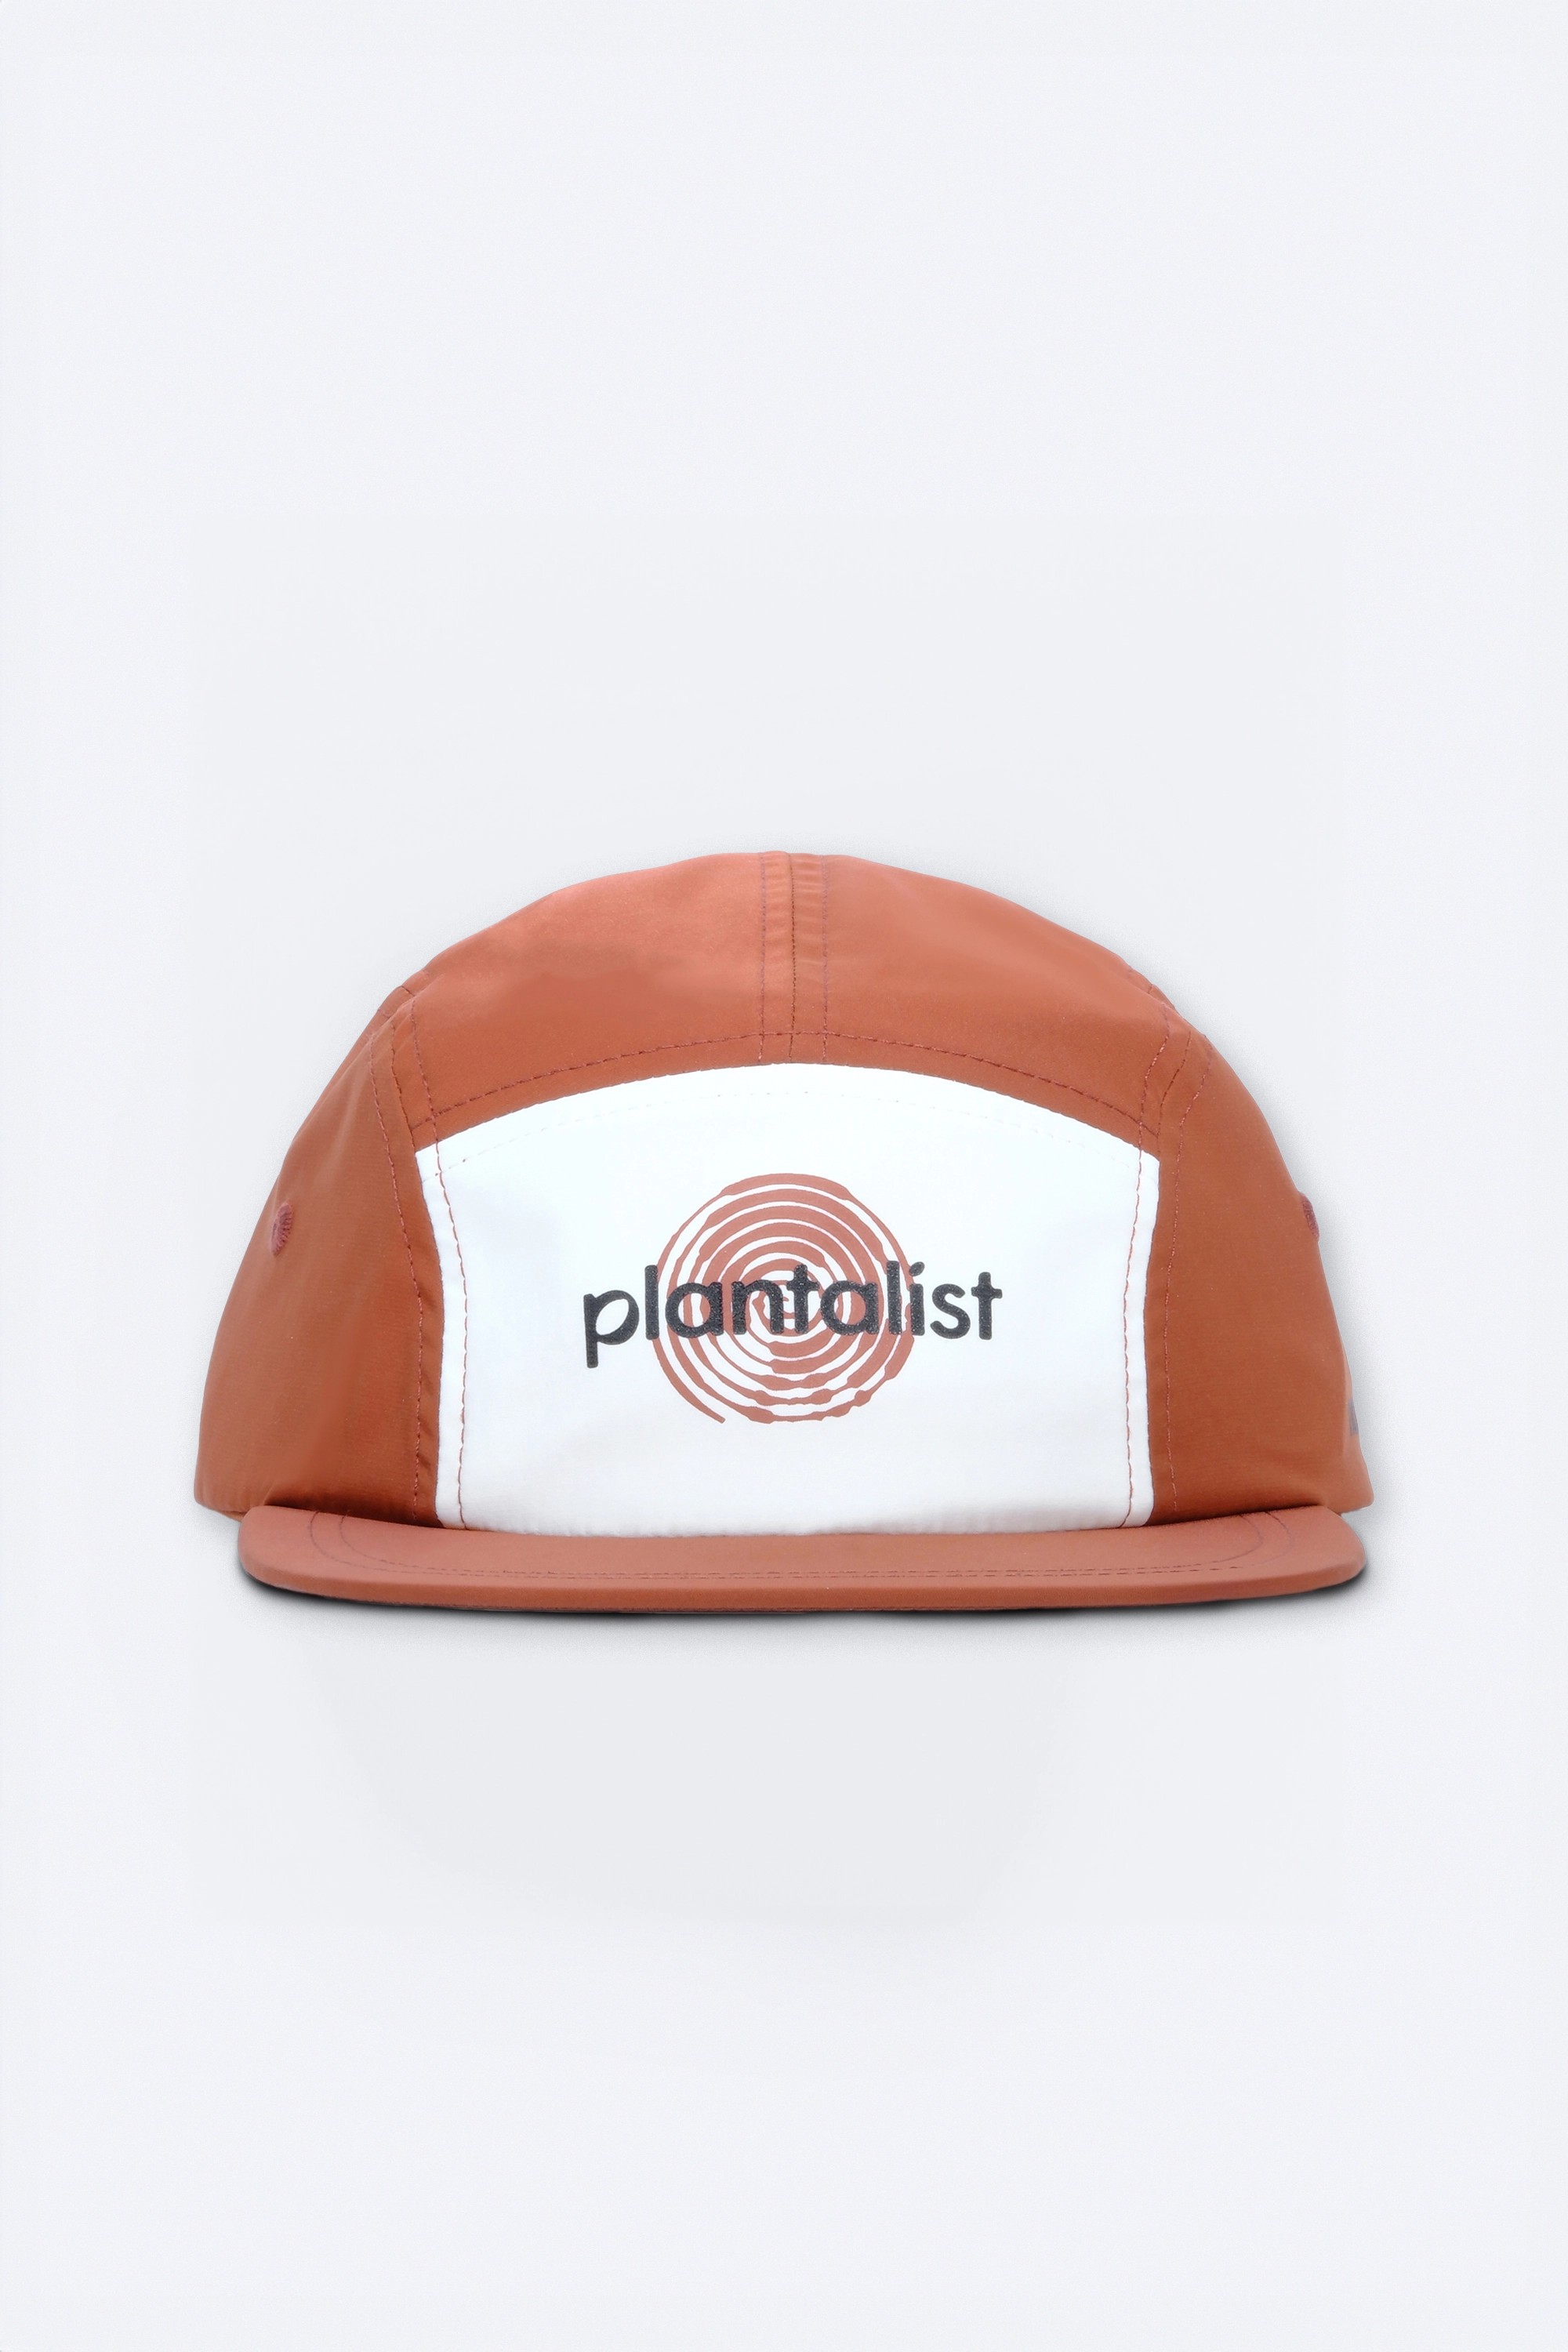 Picton Camper Ayarlanabilir Kep Şapka - Kırmızı